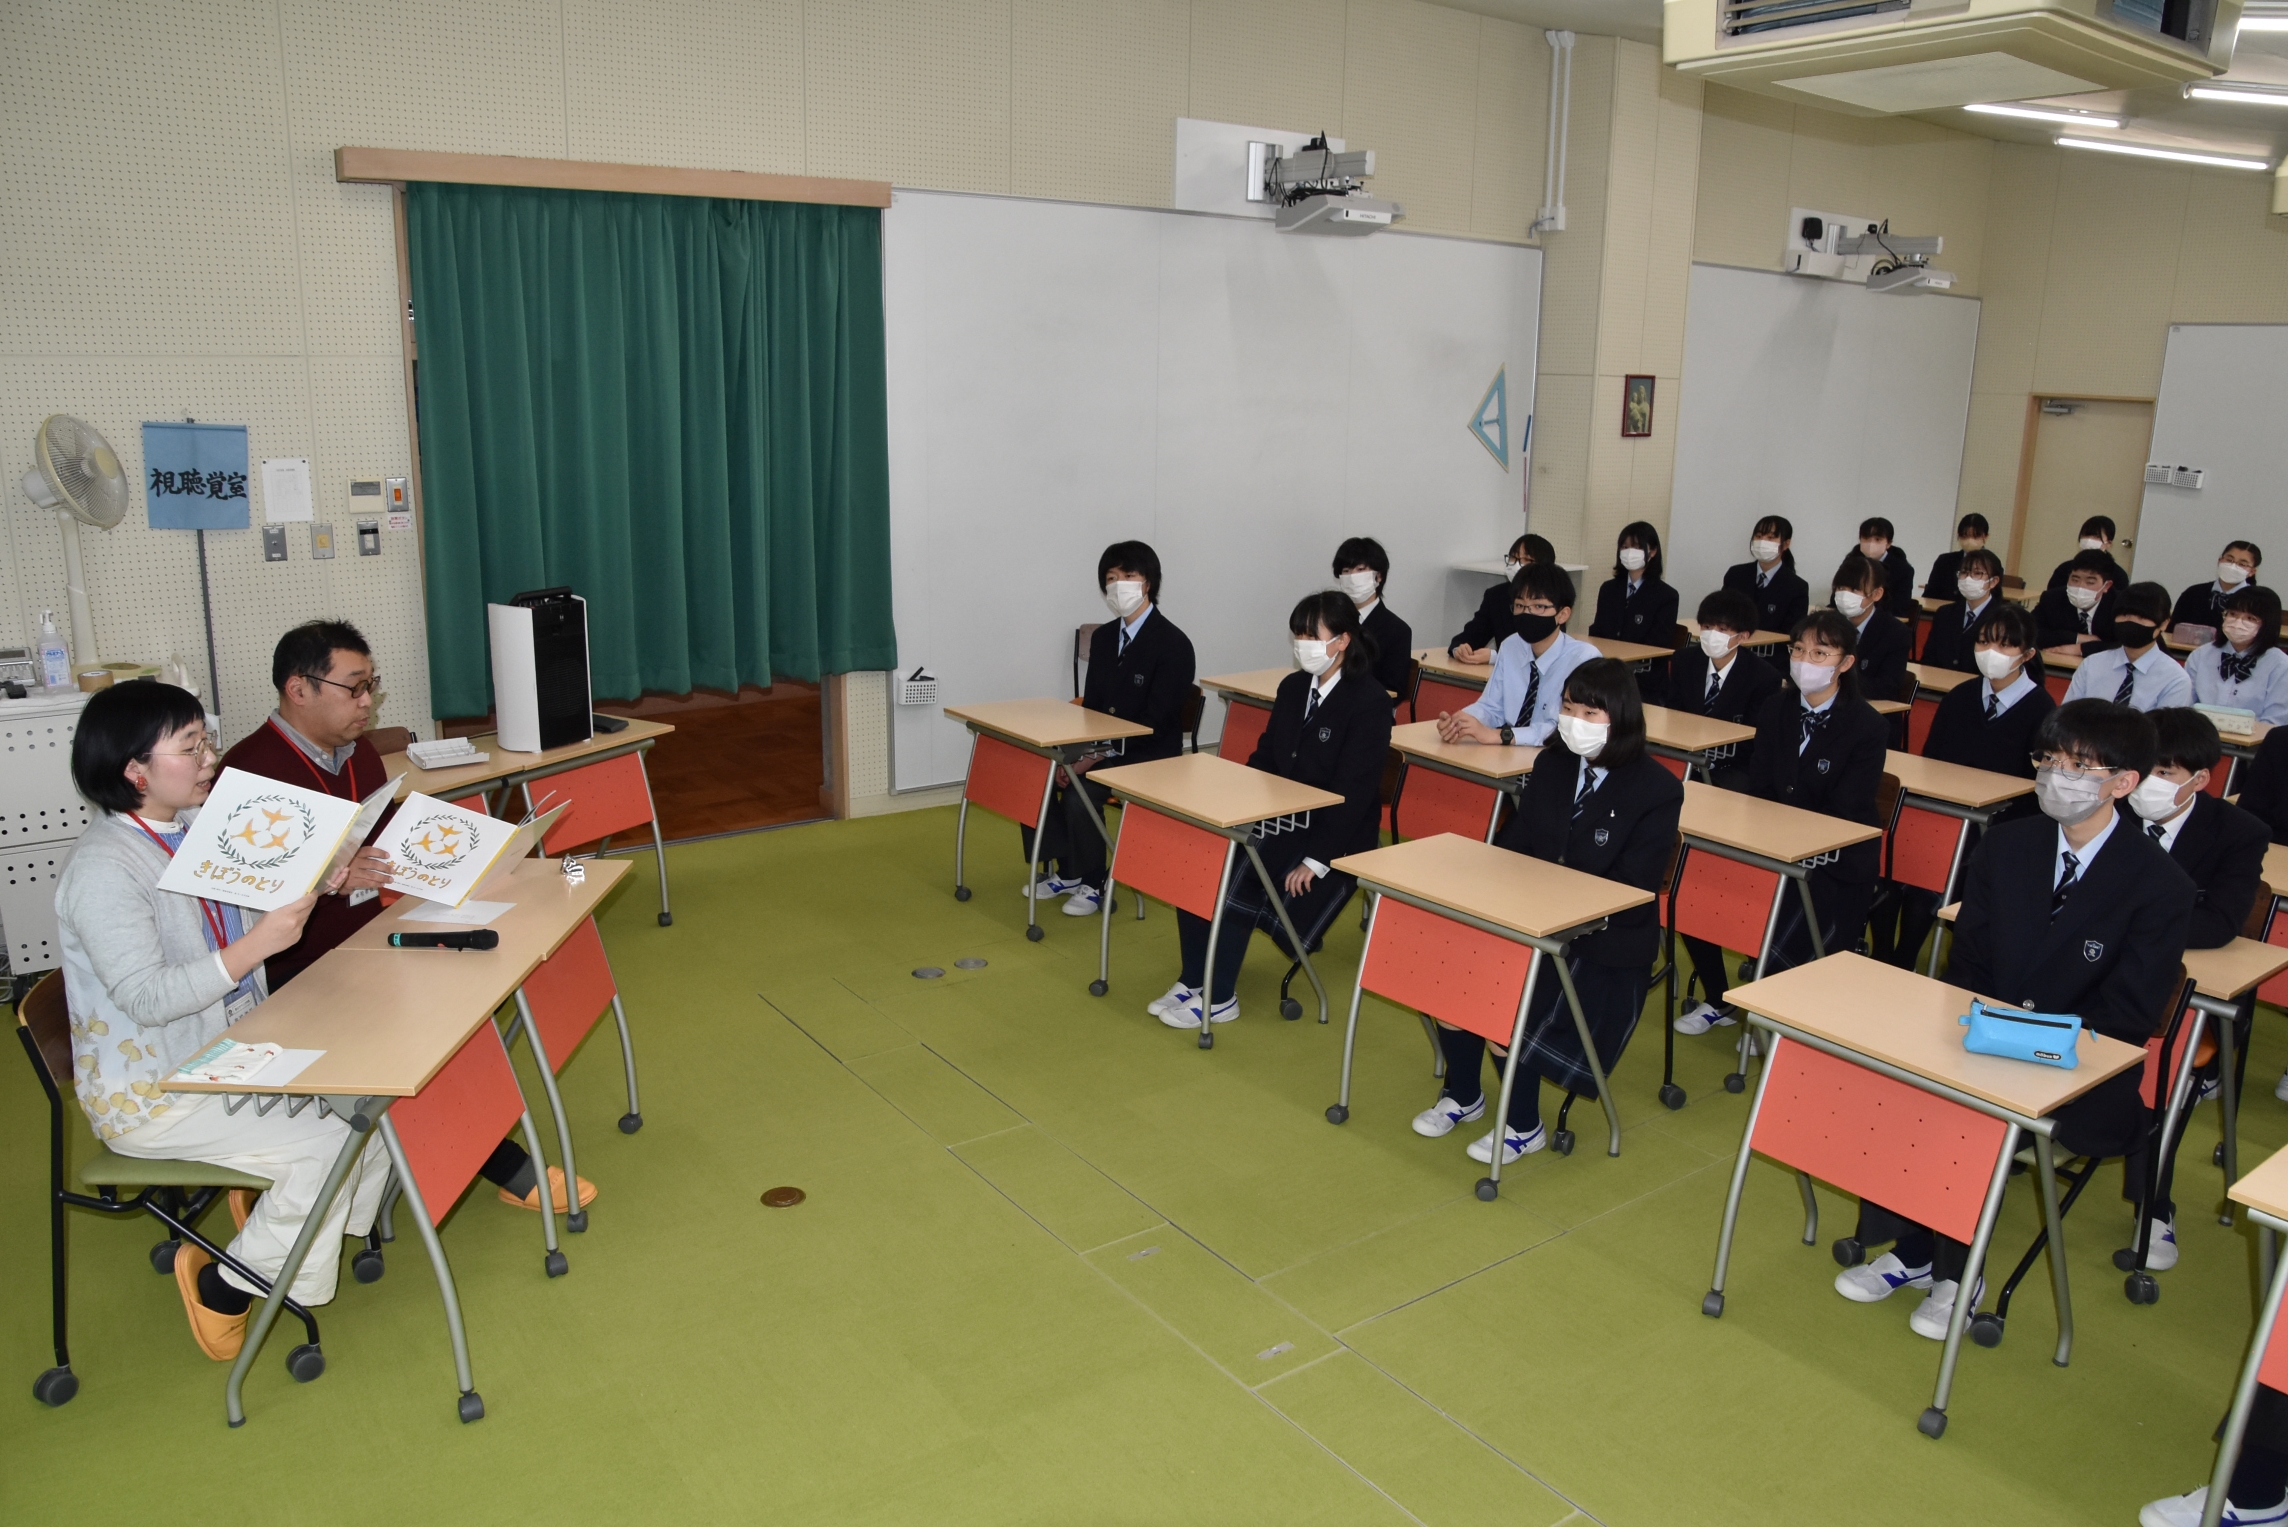 江藤さんとよしもとさんの朗読に耳を傾ける生徒